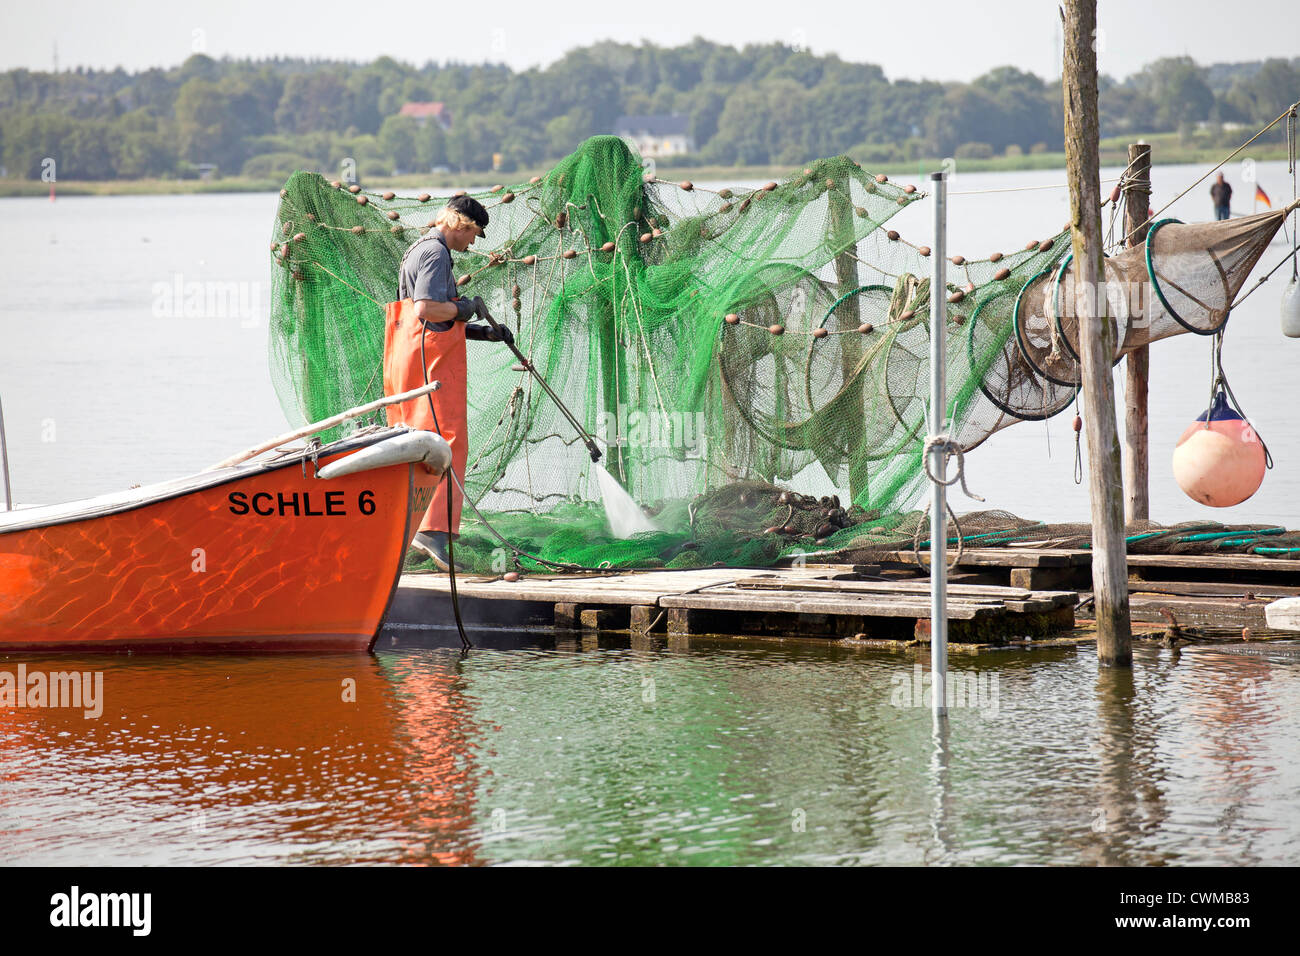 Nettoyage du pêcheur au filet de pêche le trimestre Holm à Schleswig, Schleswig-Holstein, Allemagne, Europe Banque D'Images